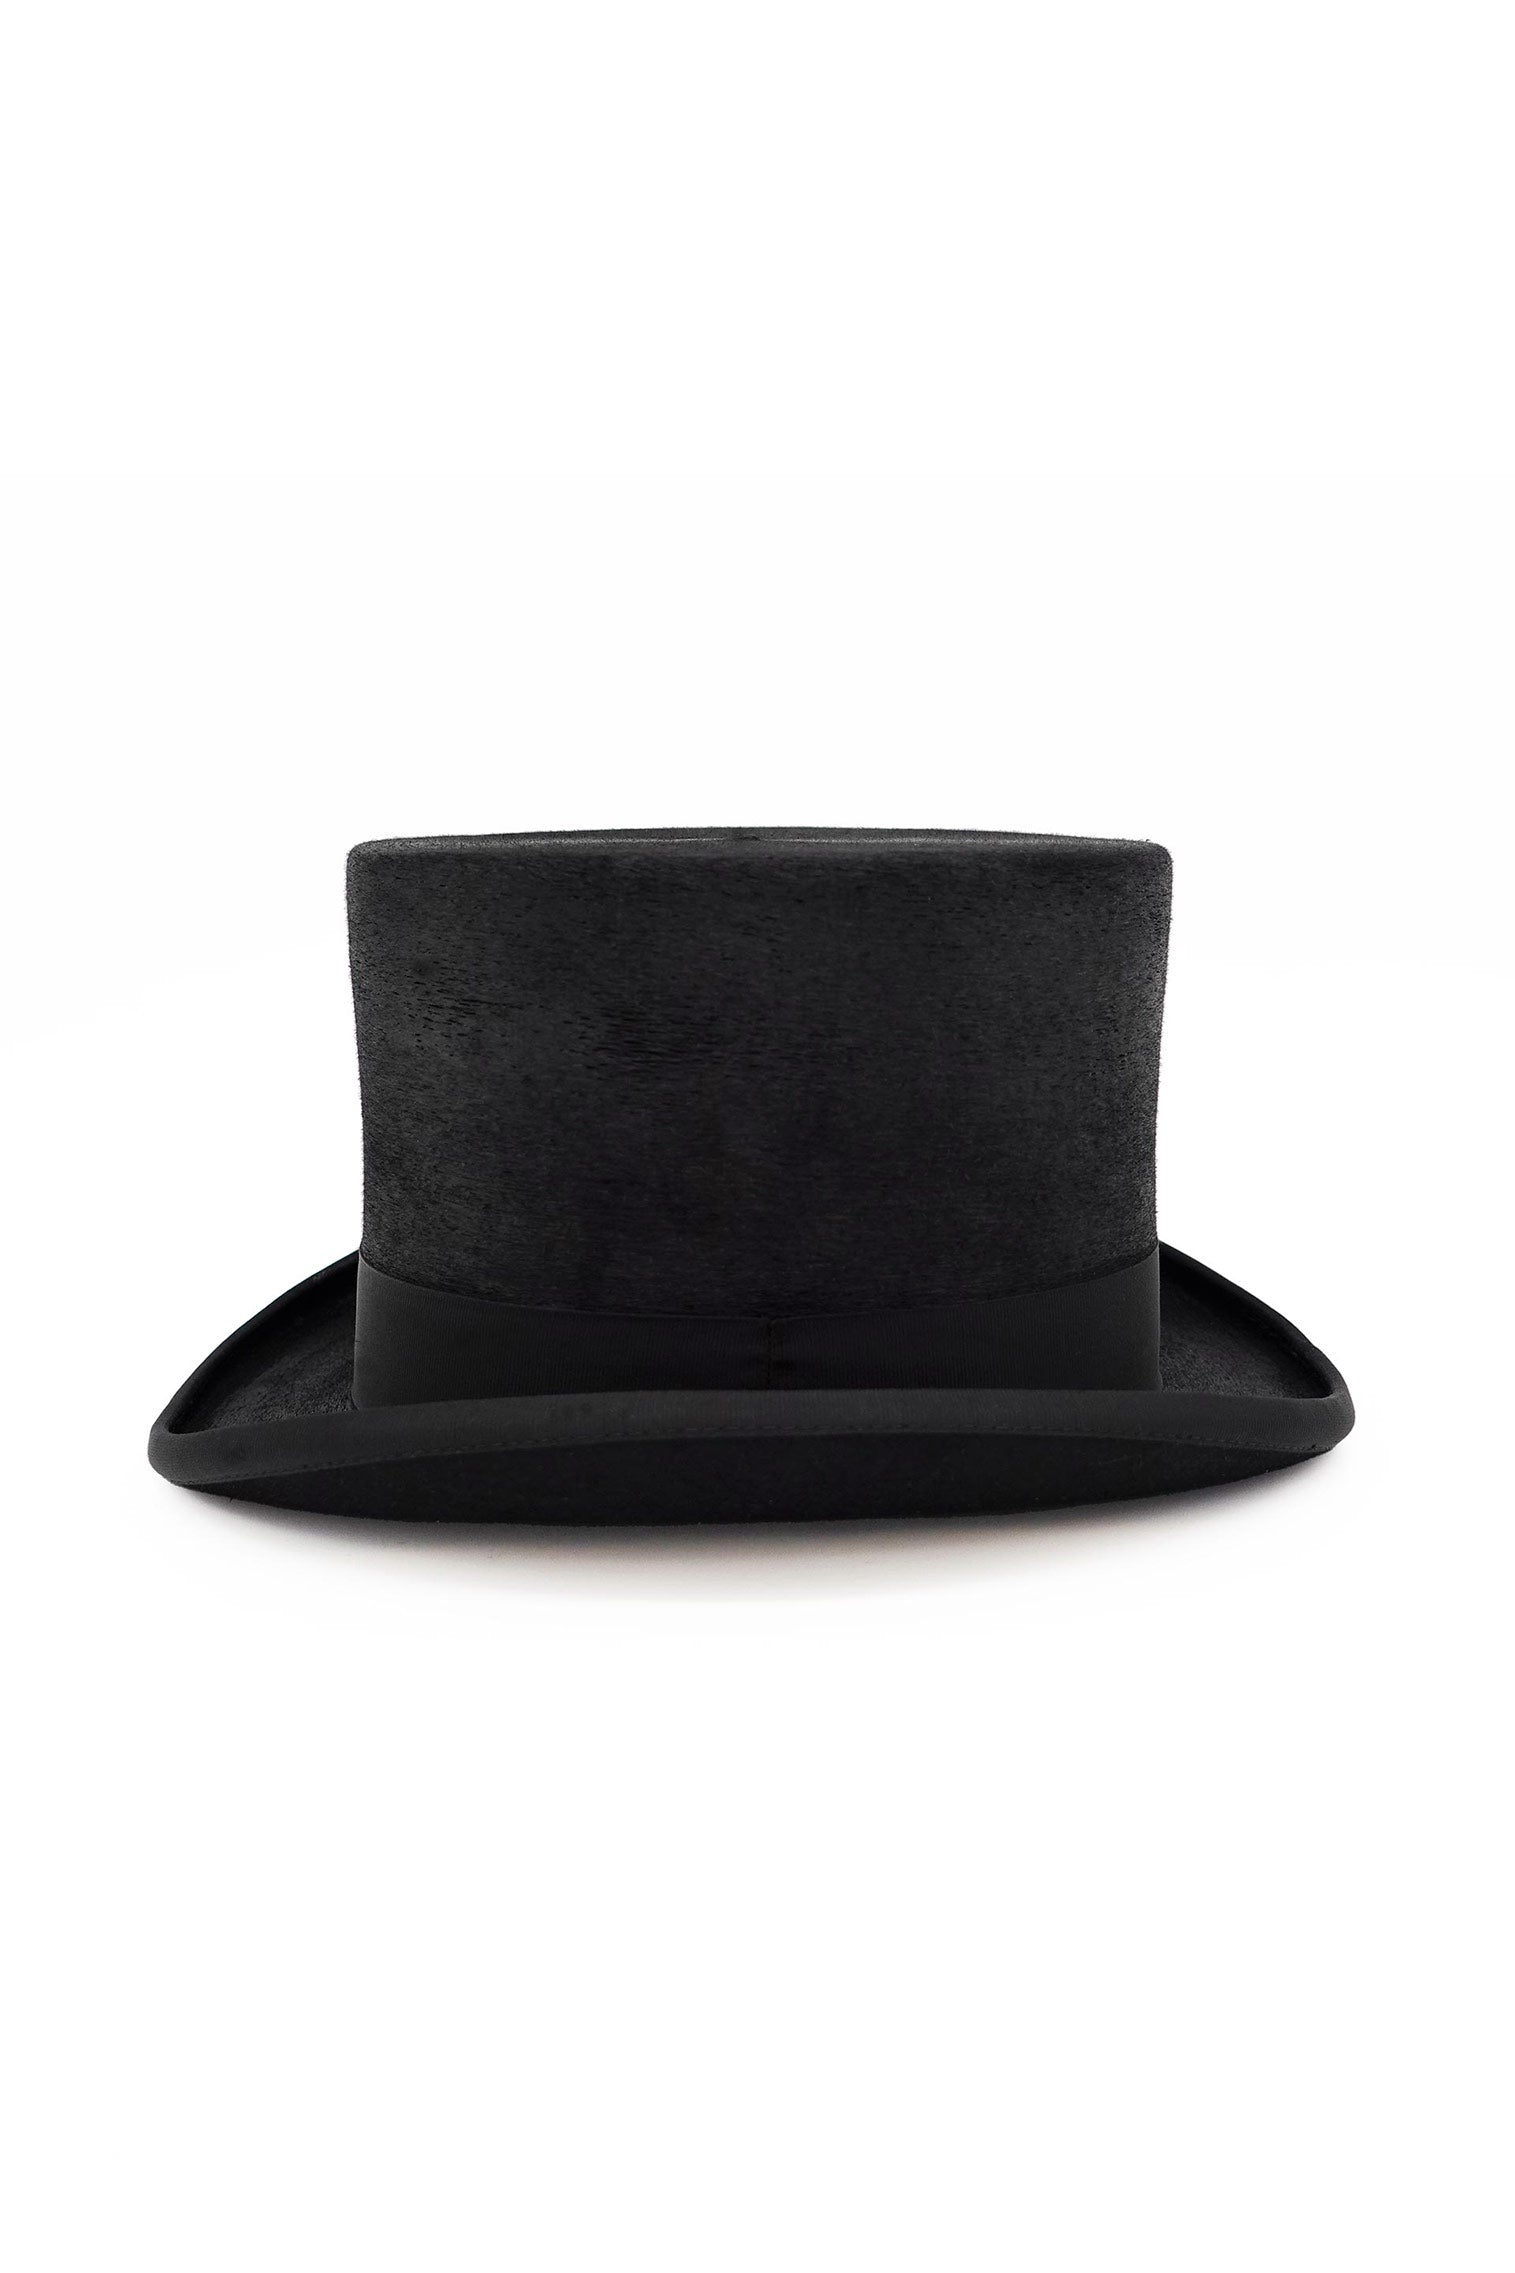 Mayfair Top Hat - New Season Men's Hats - Lock & Co. Hatters London UK